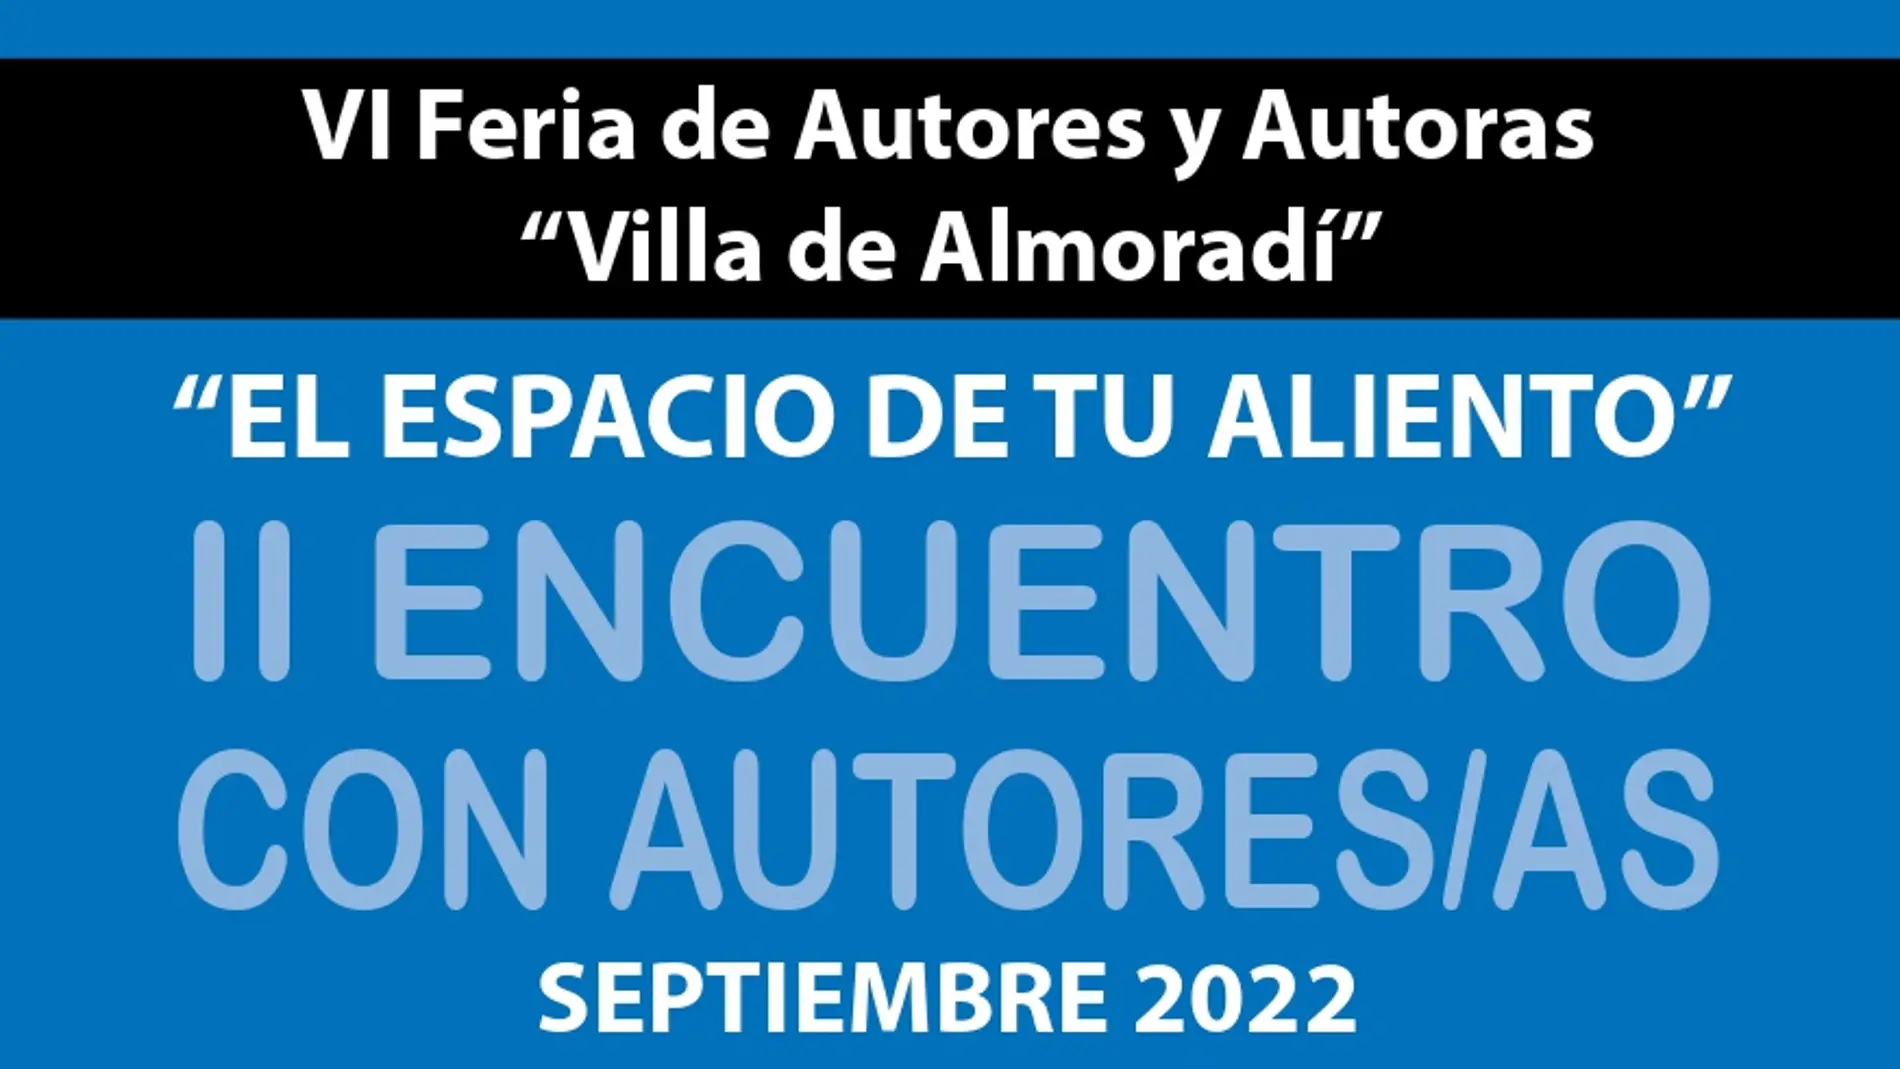 Presentación de la VI feria de autores y autoras villa de almoradí en este mes de septiembre 